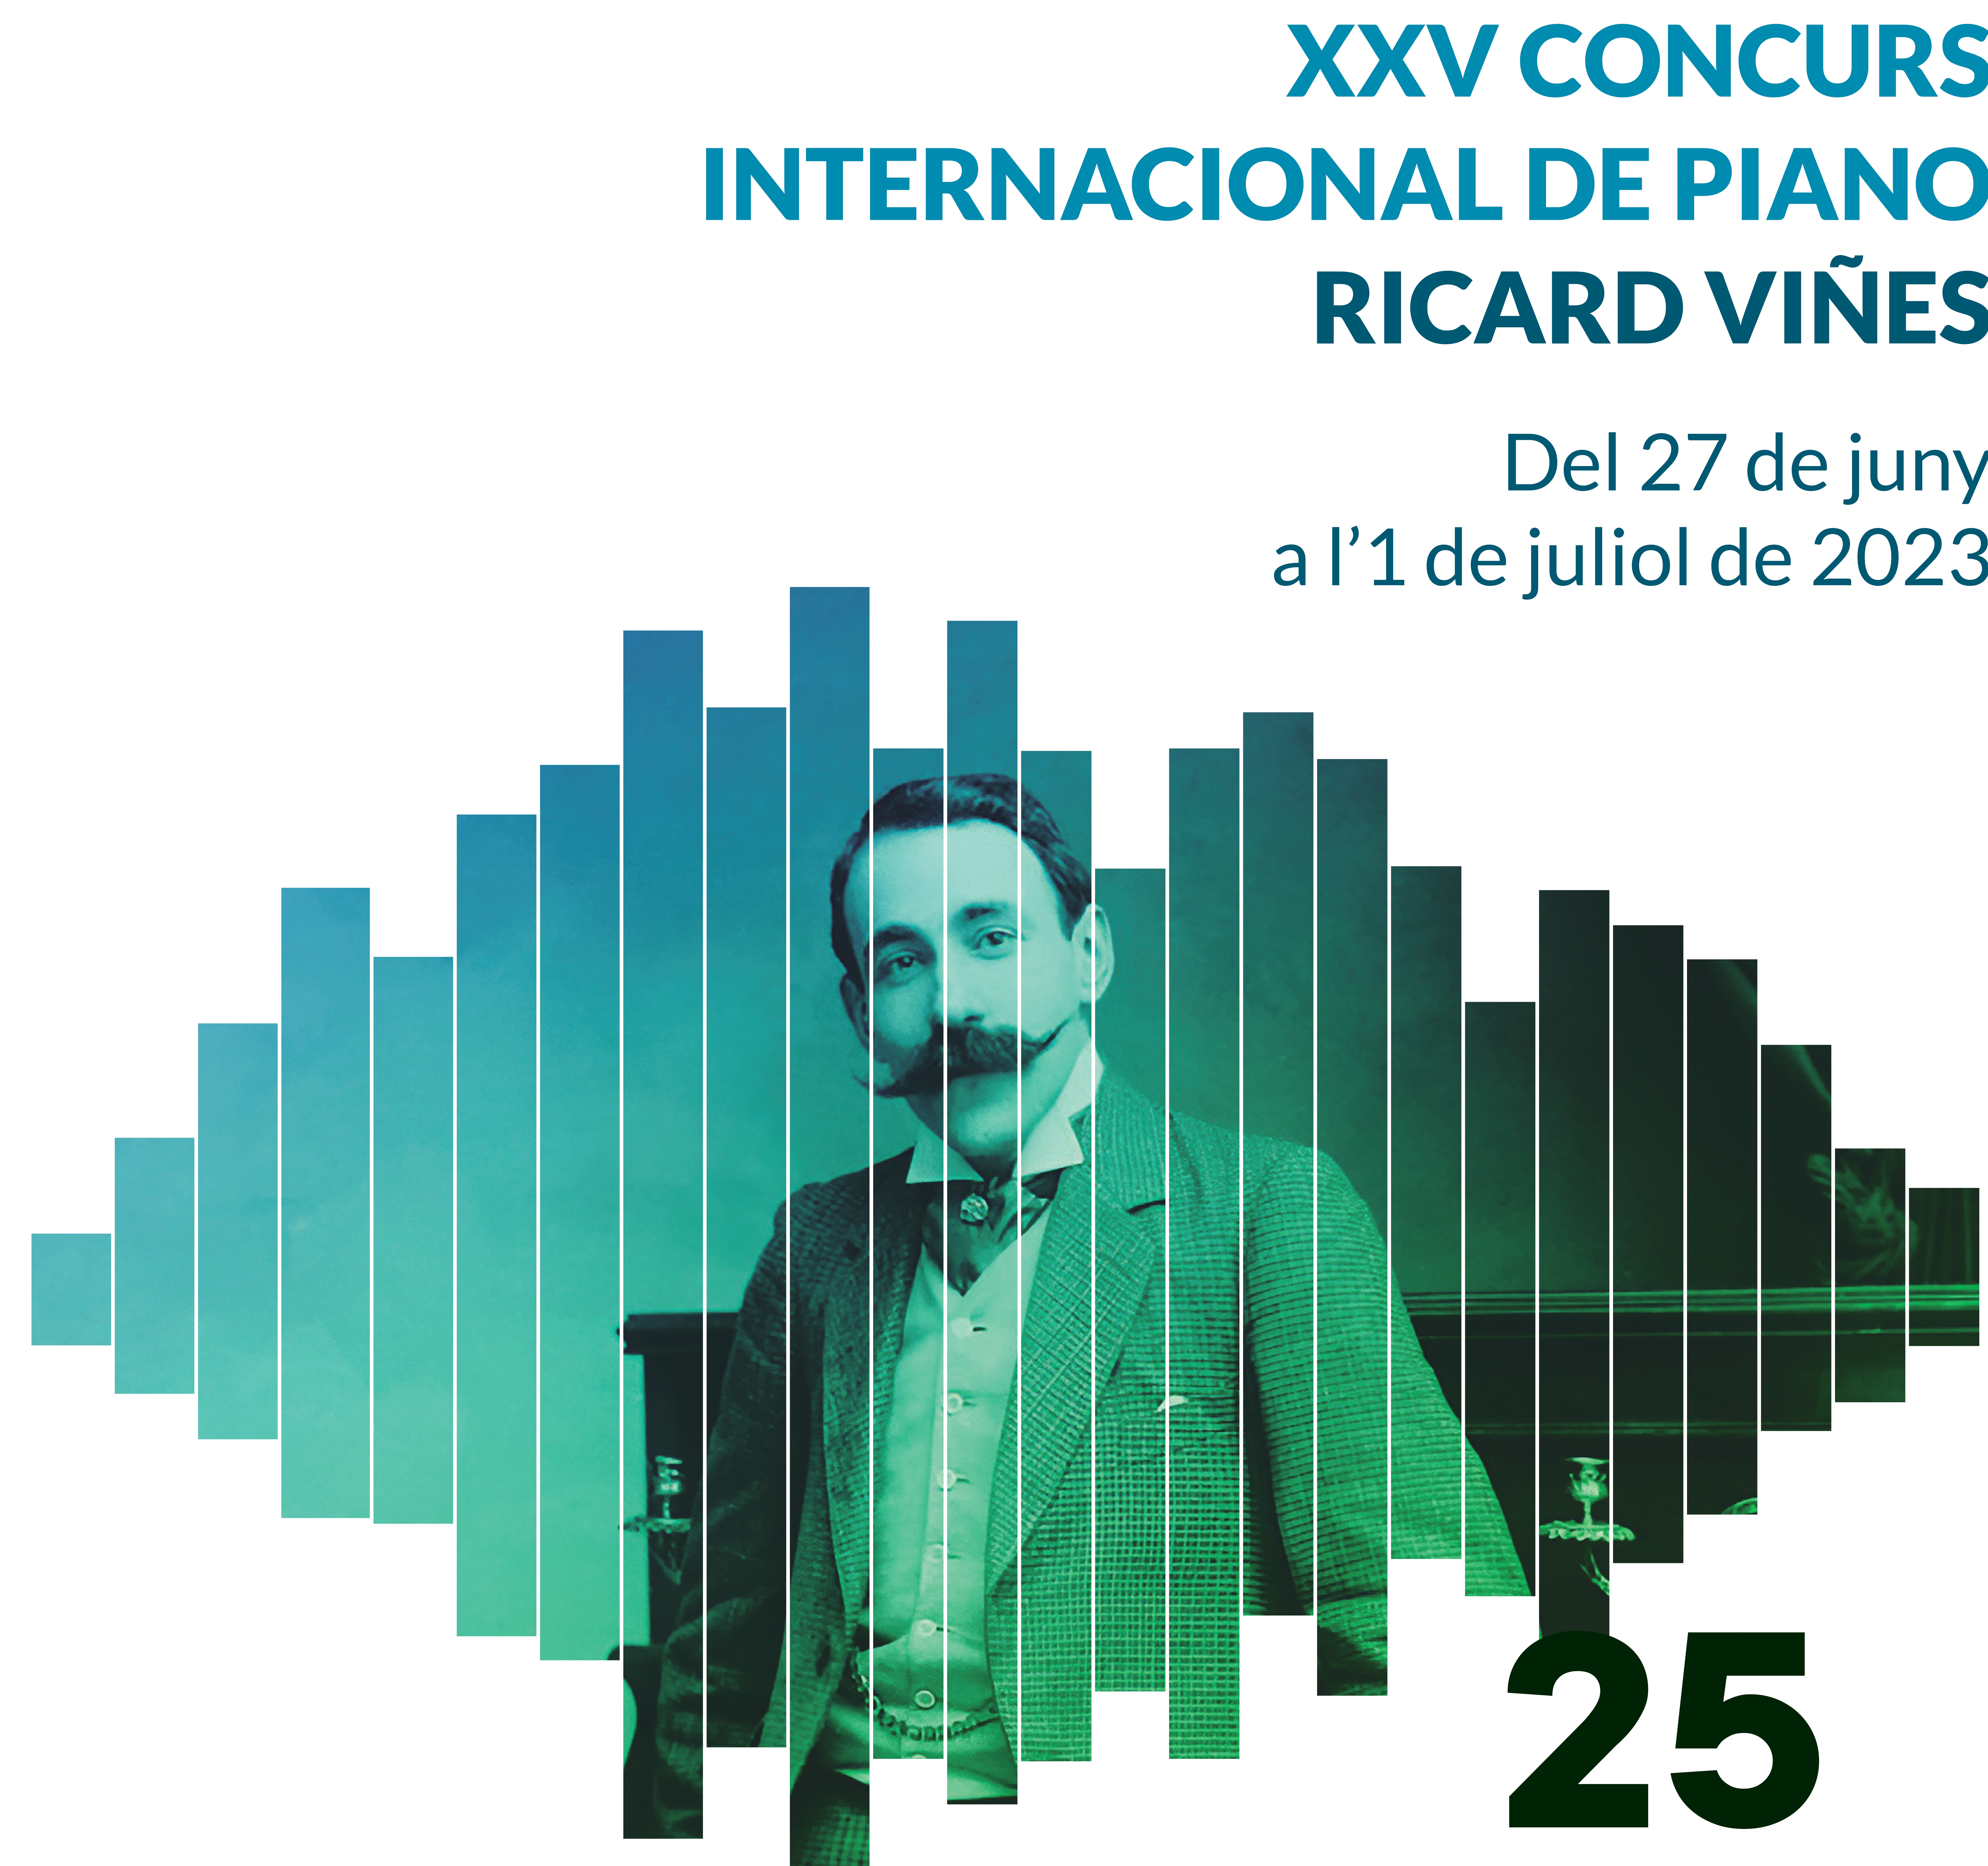 XXV CONCURS INTERNACIONAL DE PIANO RICARD VIÑES